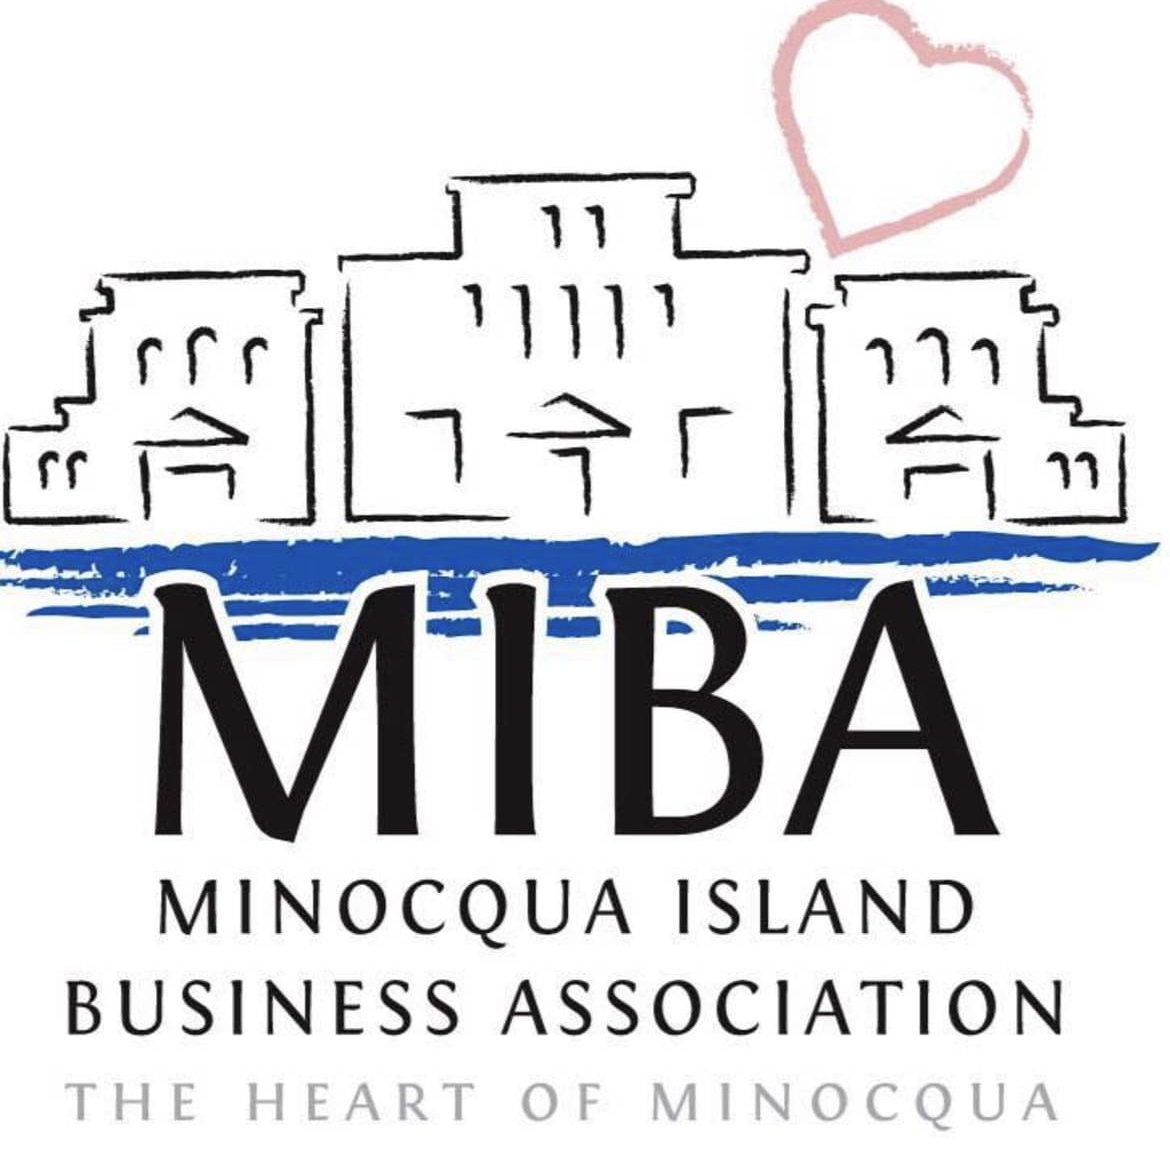 Minocqua Island Business Association